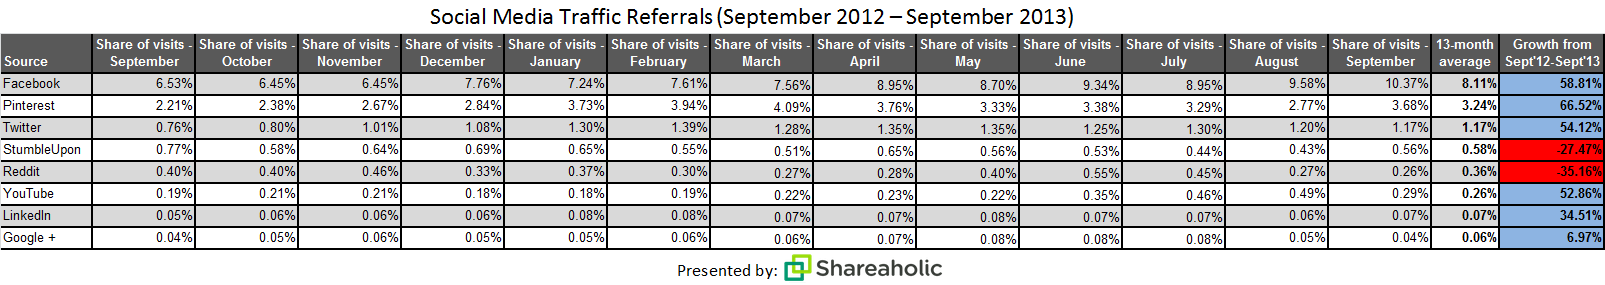 social media traffic referrals Oct '13